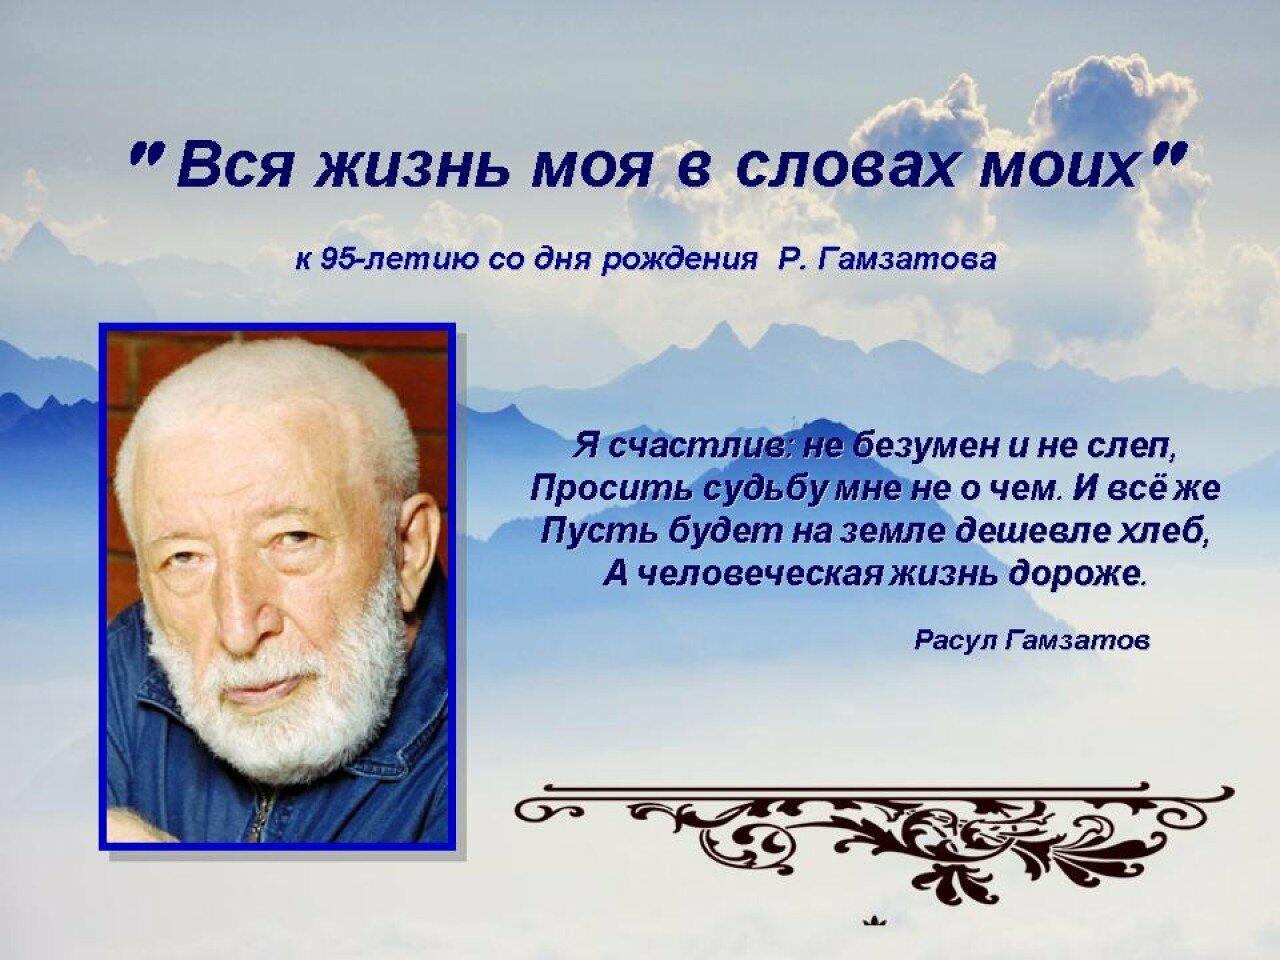 Дагестанский писатель Расул Гамзатов